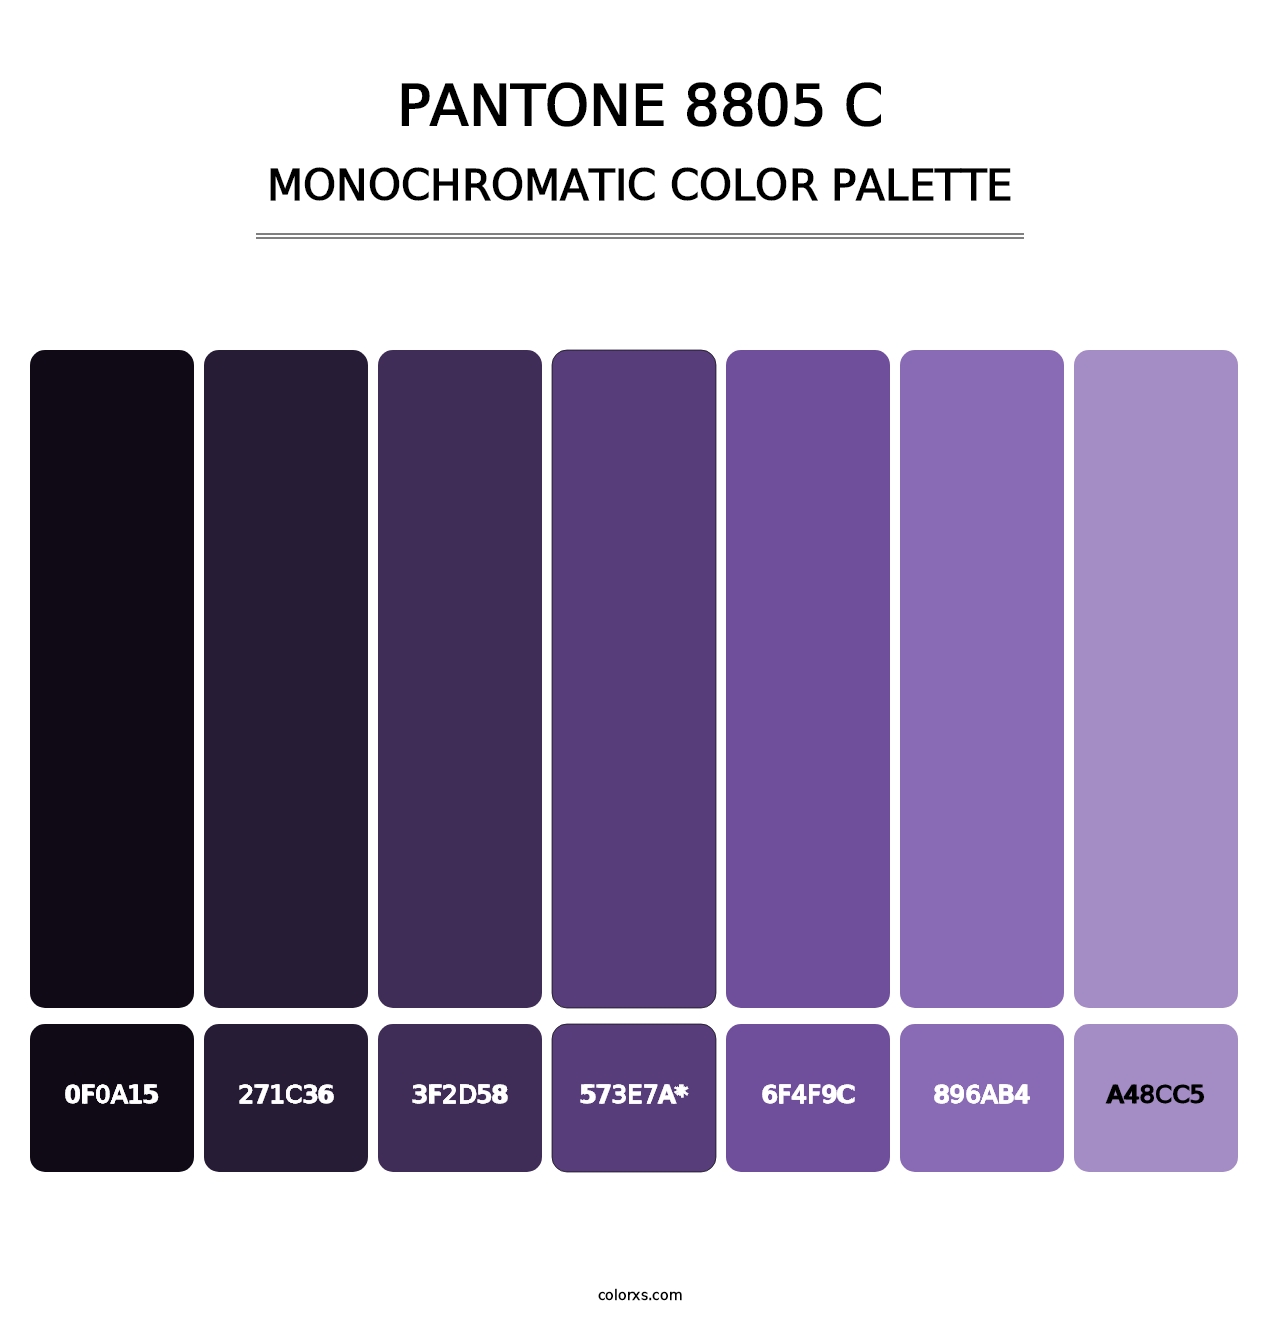 PANTONE 8805 C - Monochromatic Color Palette